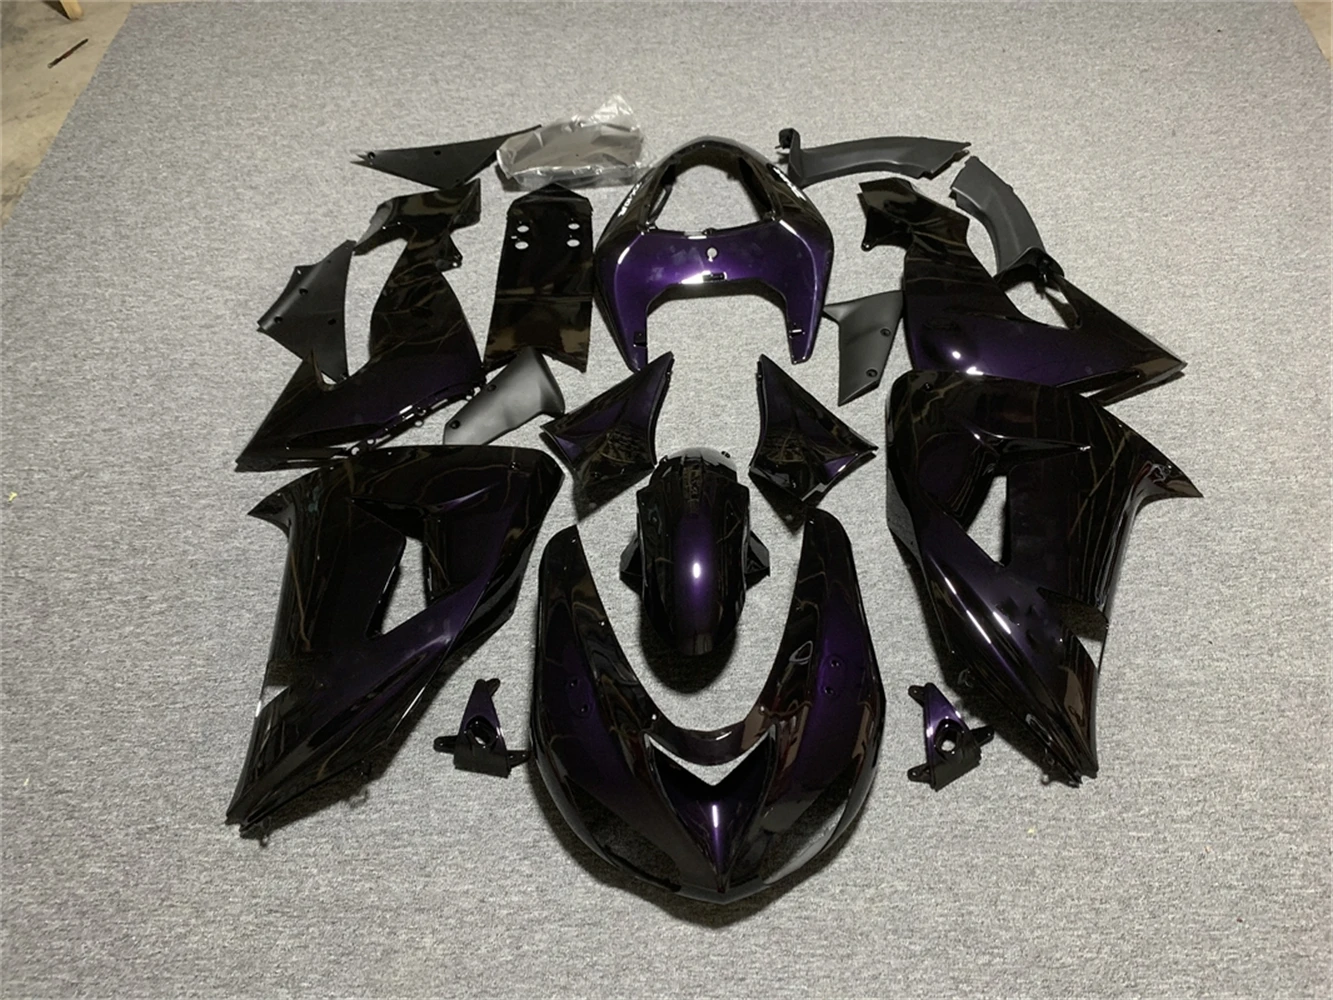 

Novo abs plástico escudo da motocicleta carenagem kit apto para kawasaki ninja zx10r 2006 2007 06 07 10r ZX-10R personalizado